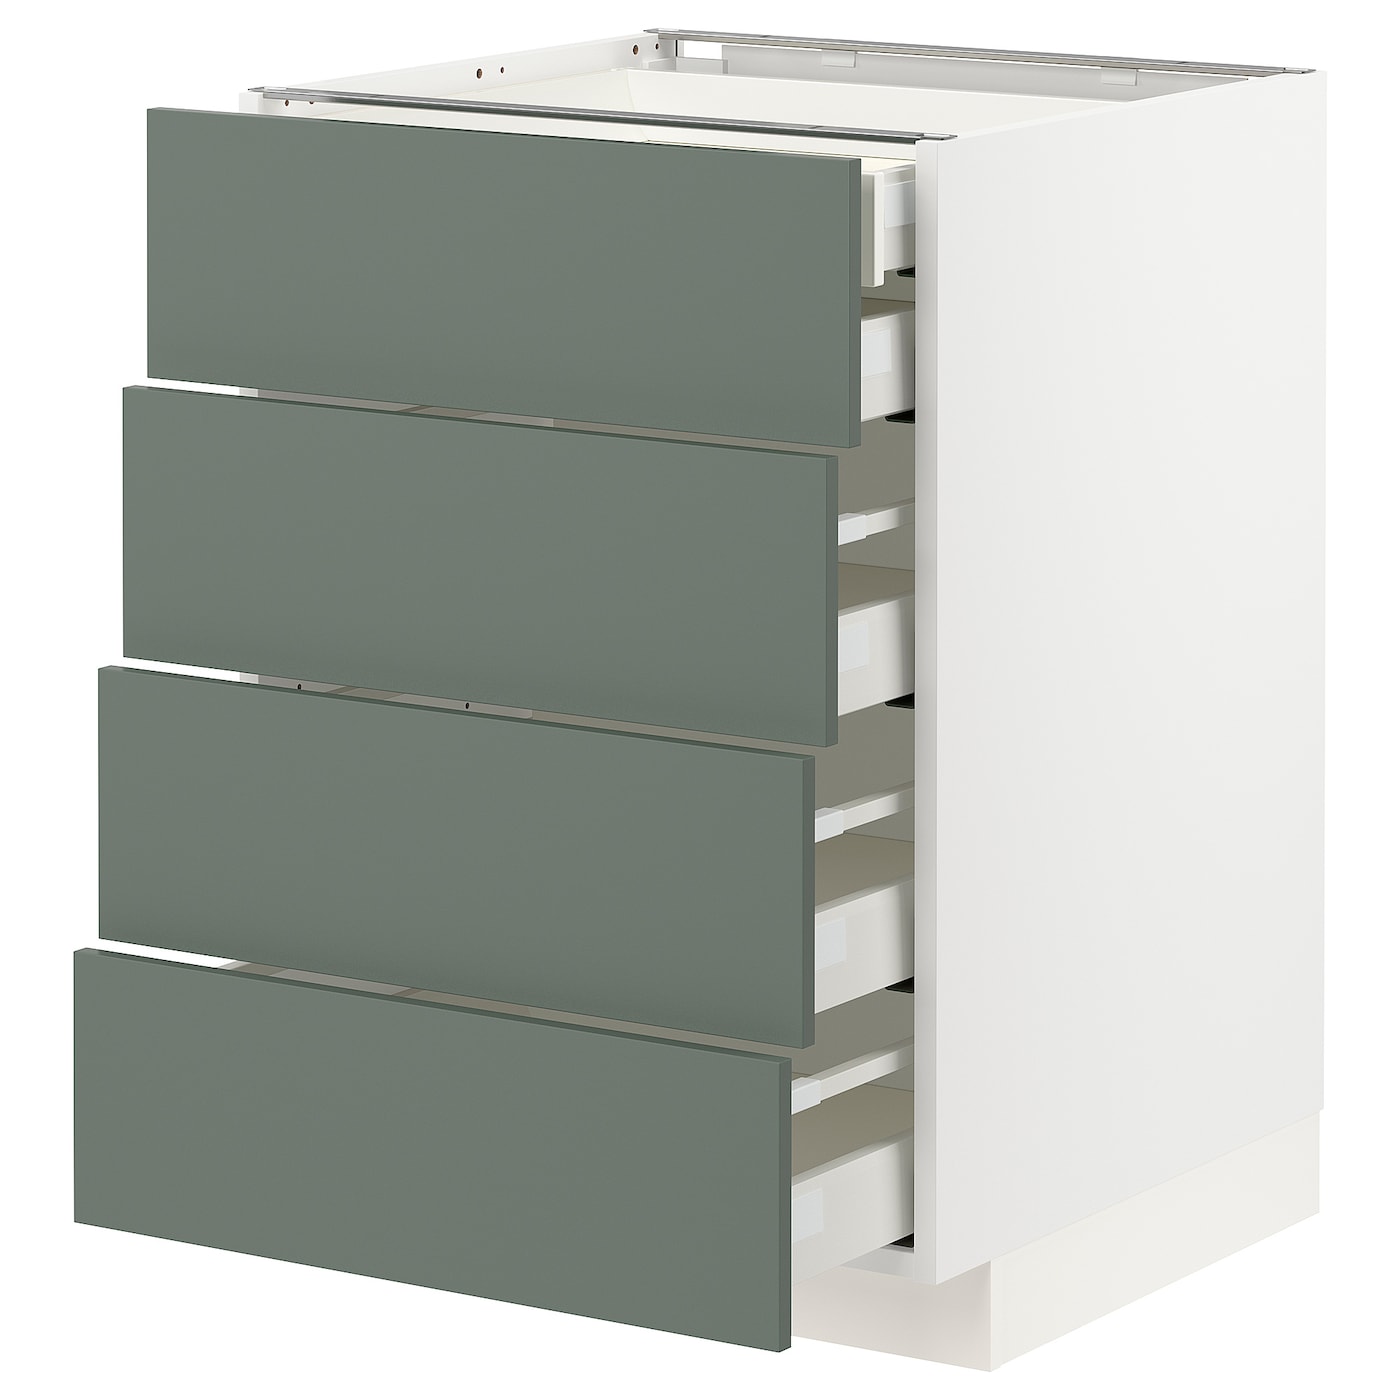 Напольный кухонный шкаф  - IKEA METOD MAXIMERA, 88x61,6x60см, белый/серый, МЕТОД МАКСИМЕРА ИКЕА